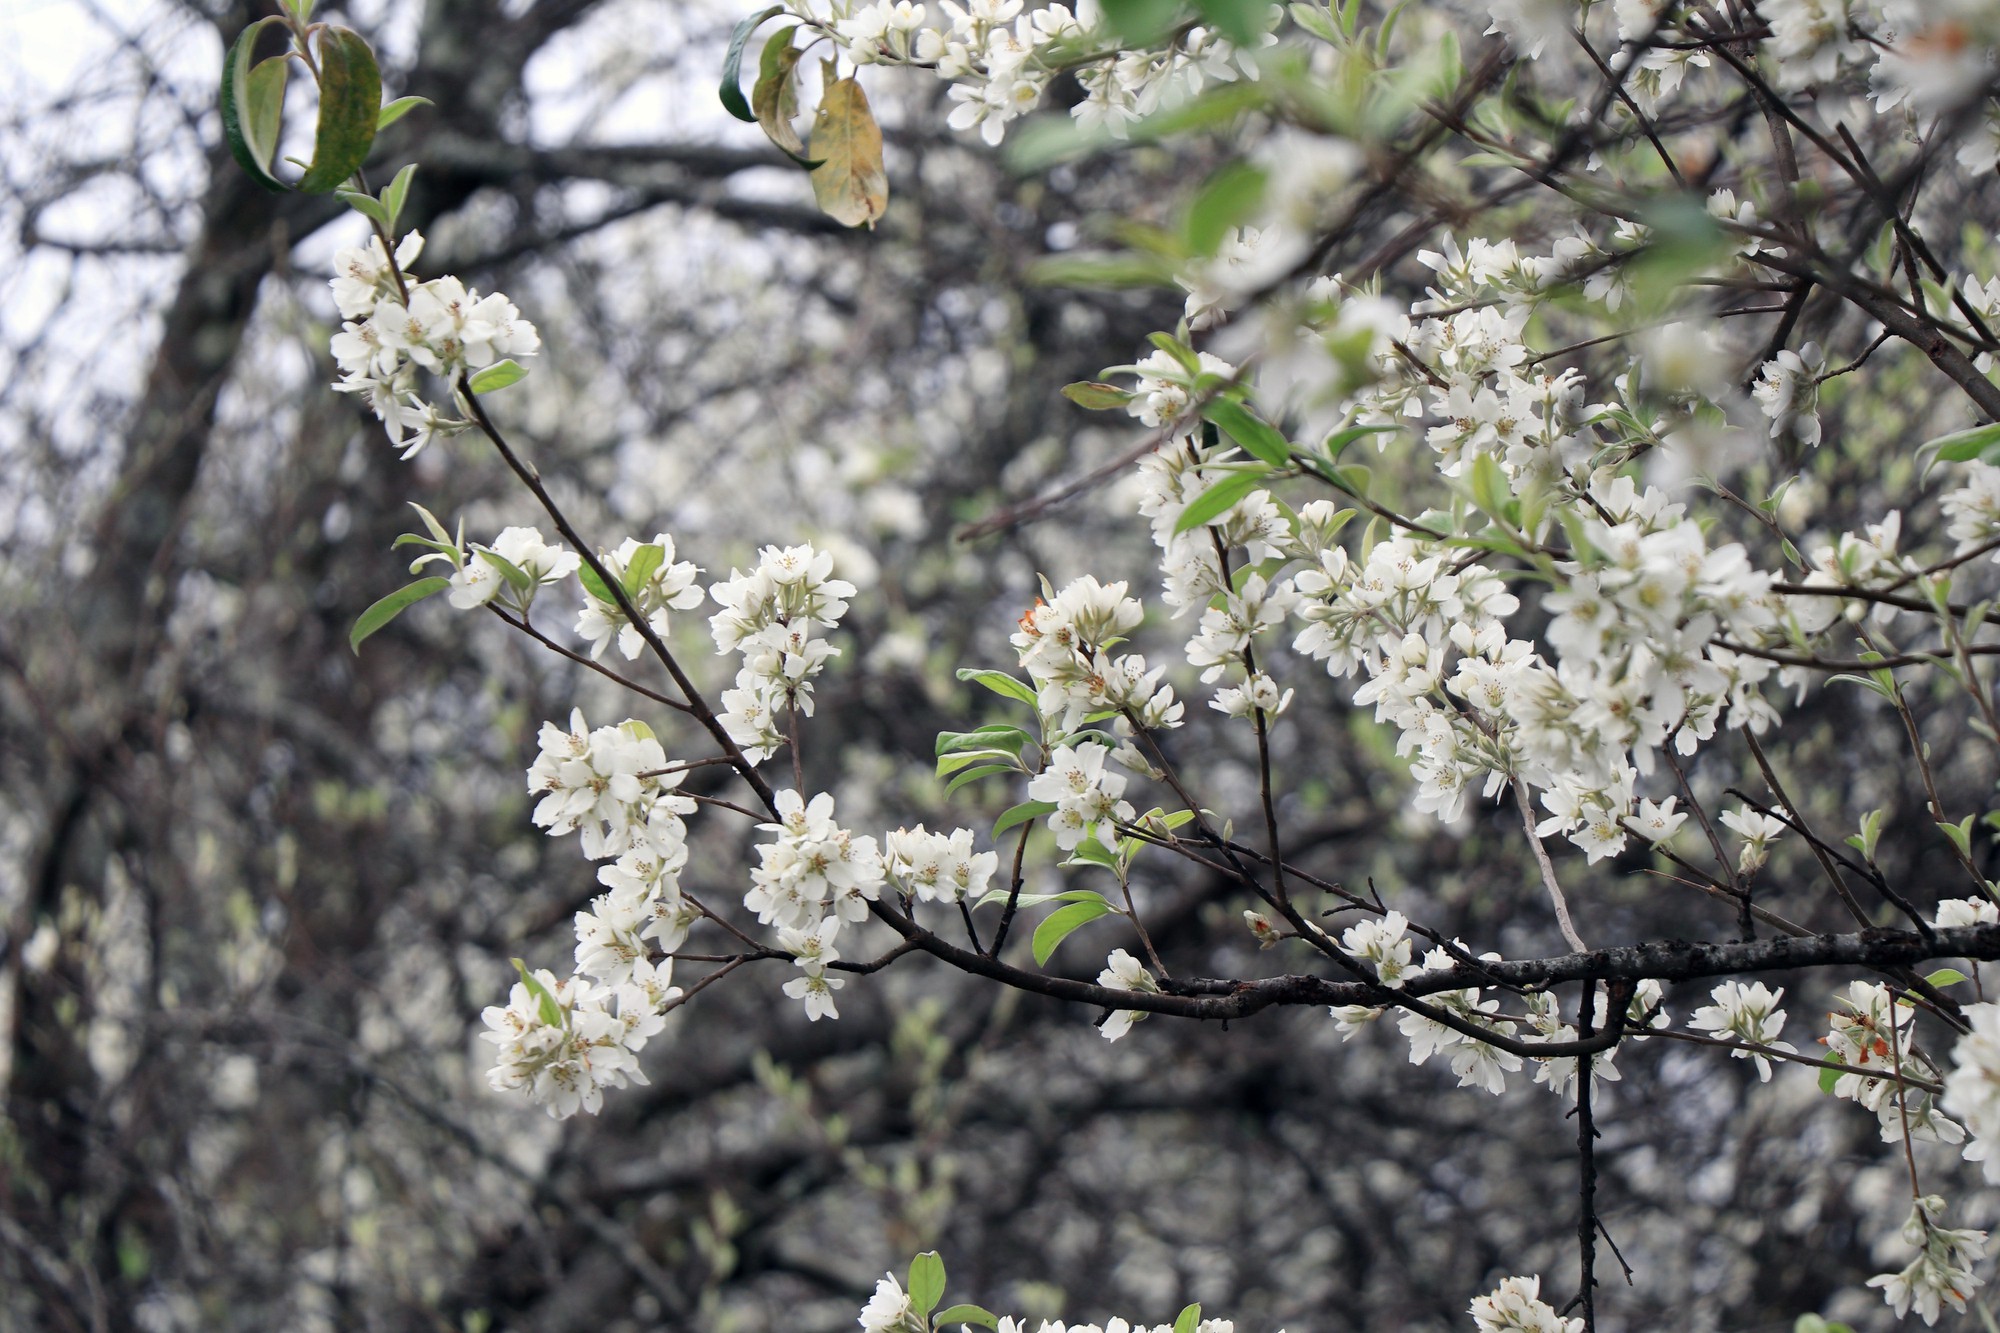 Mùa hoa sơn tra bắt đầu từ cuối tháng 2 đến tháng 4 hằng năm, trong đó hoa bung nở đẹp nhất vào tháng 3.jpg